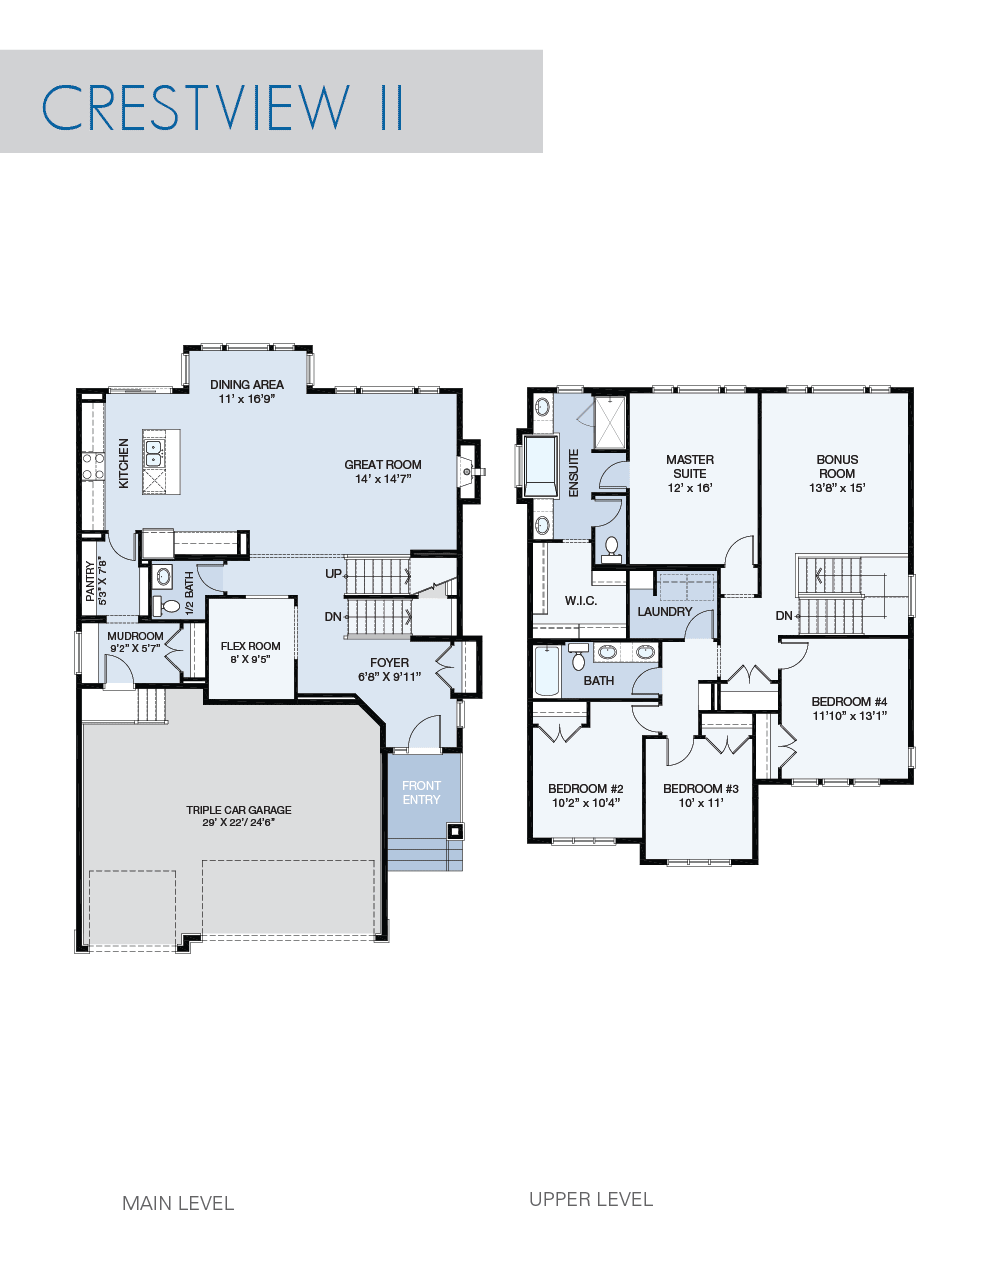 Crestview II floorplan